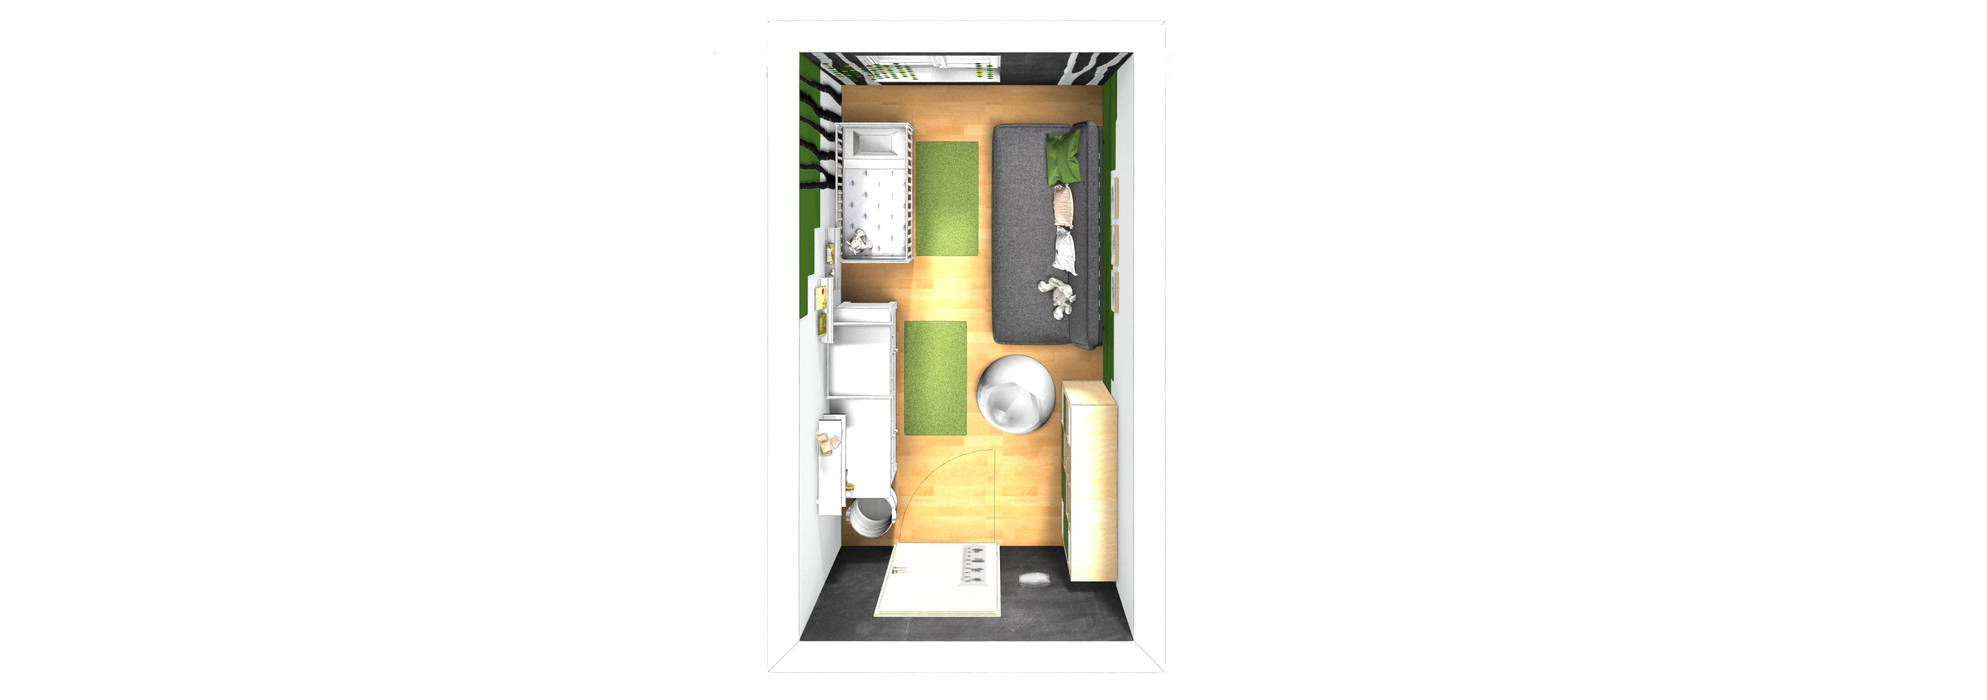 Babyzimmer: Wald, Der Schlüssel zum Glück - Interior Design Der Schlüssel zum Glück - Interior Design 赤ちゃん部屋